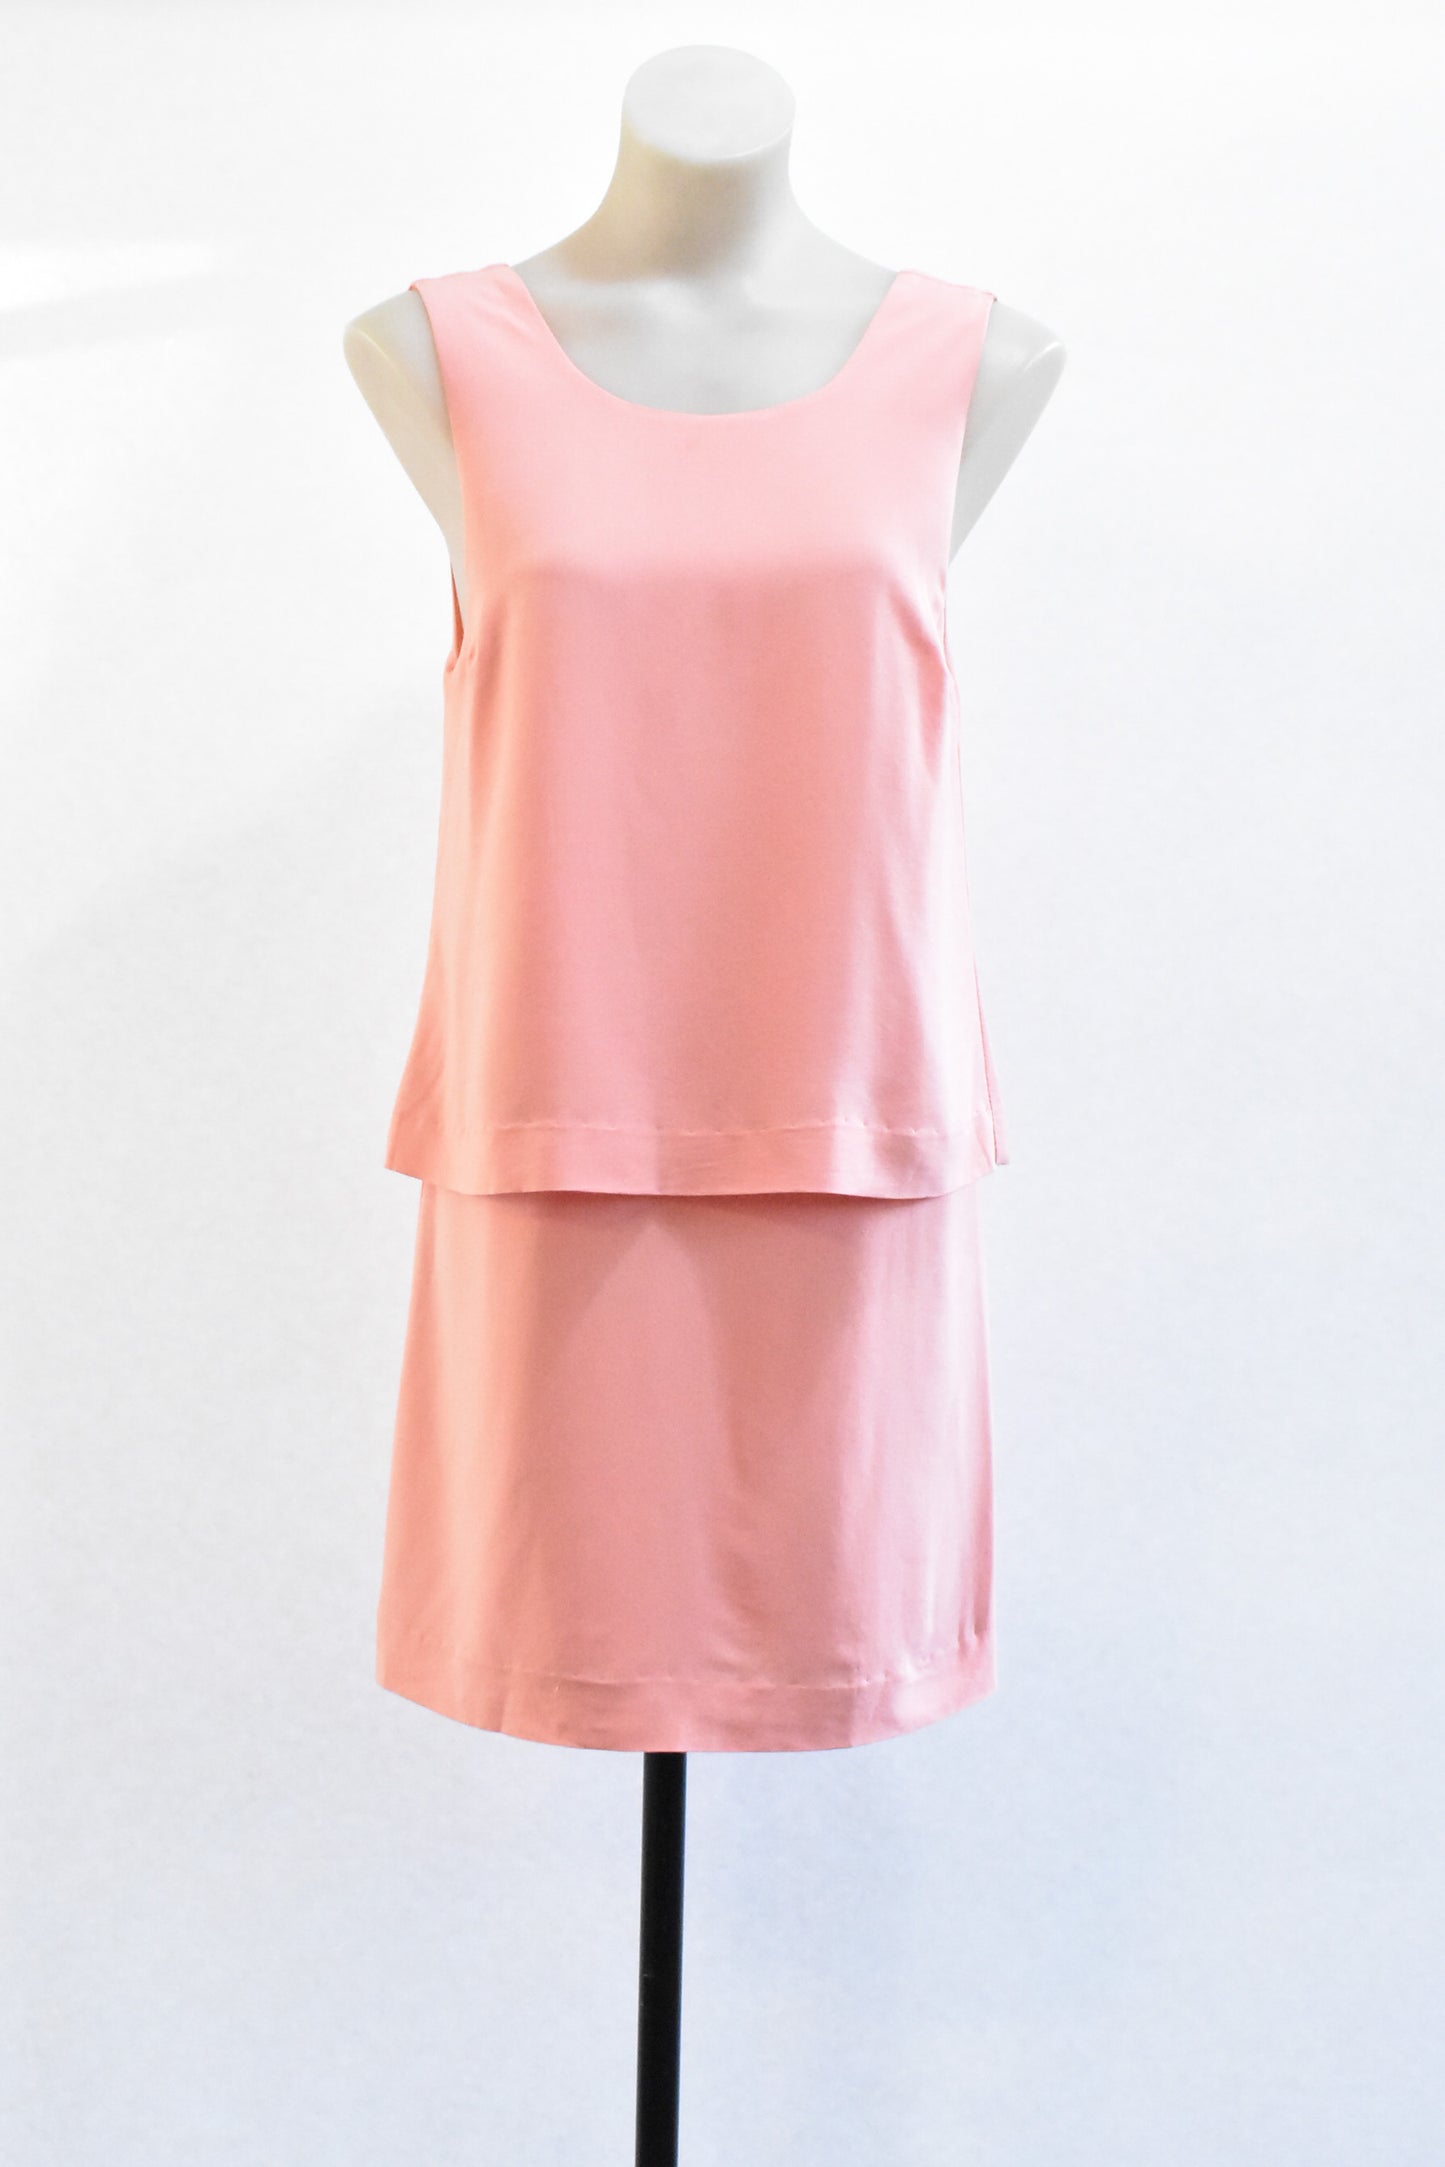 Sisters dusky pink singlet dress, size 8